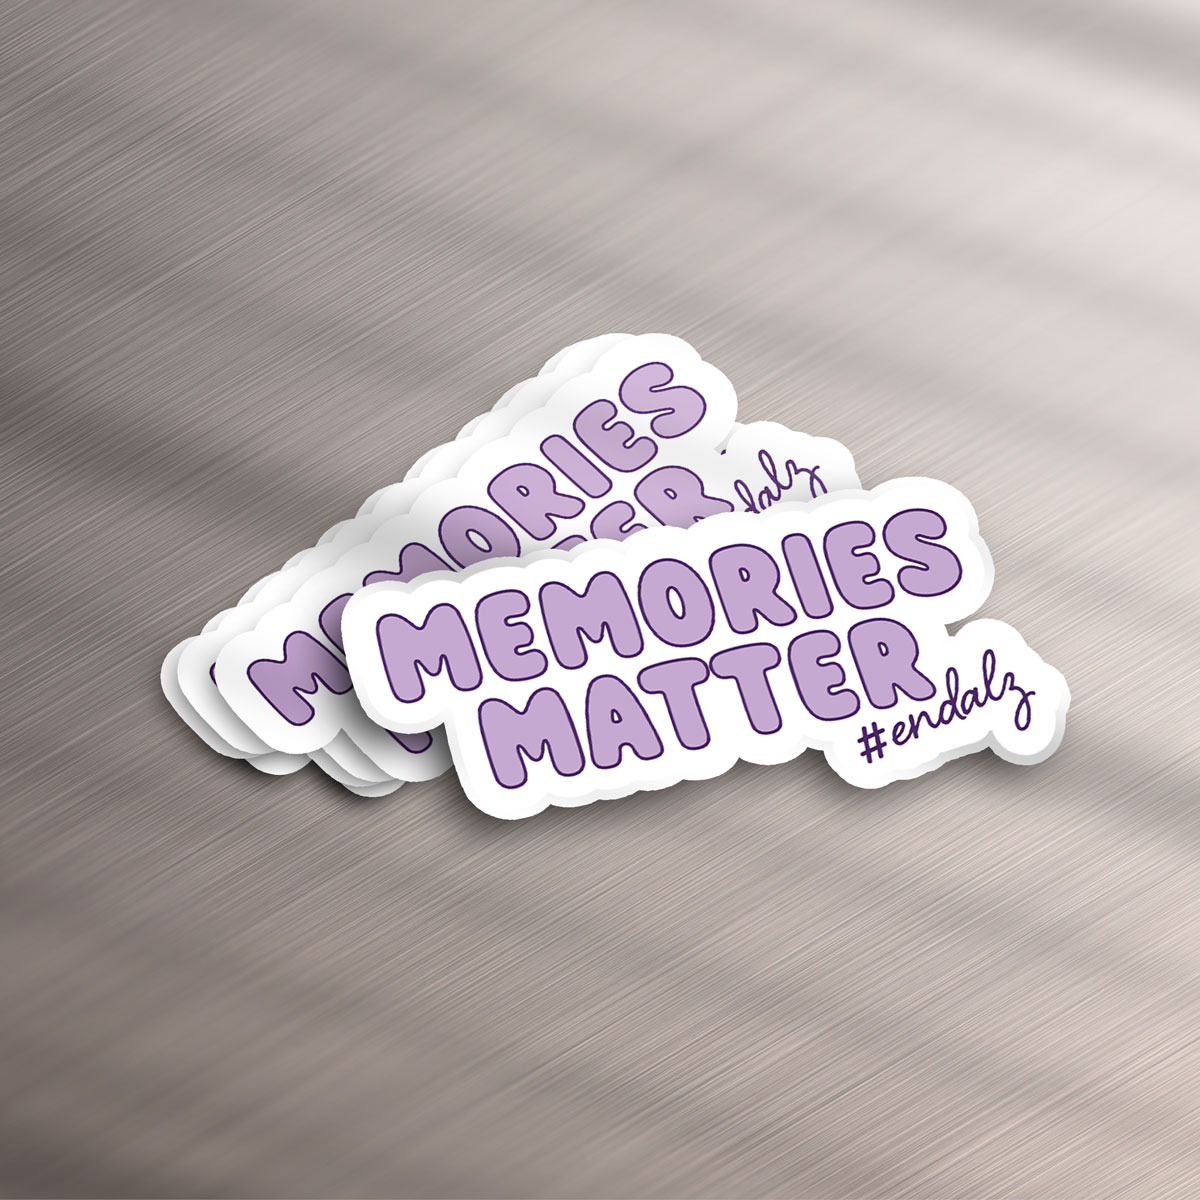 Memories Matter #endalz Sticker